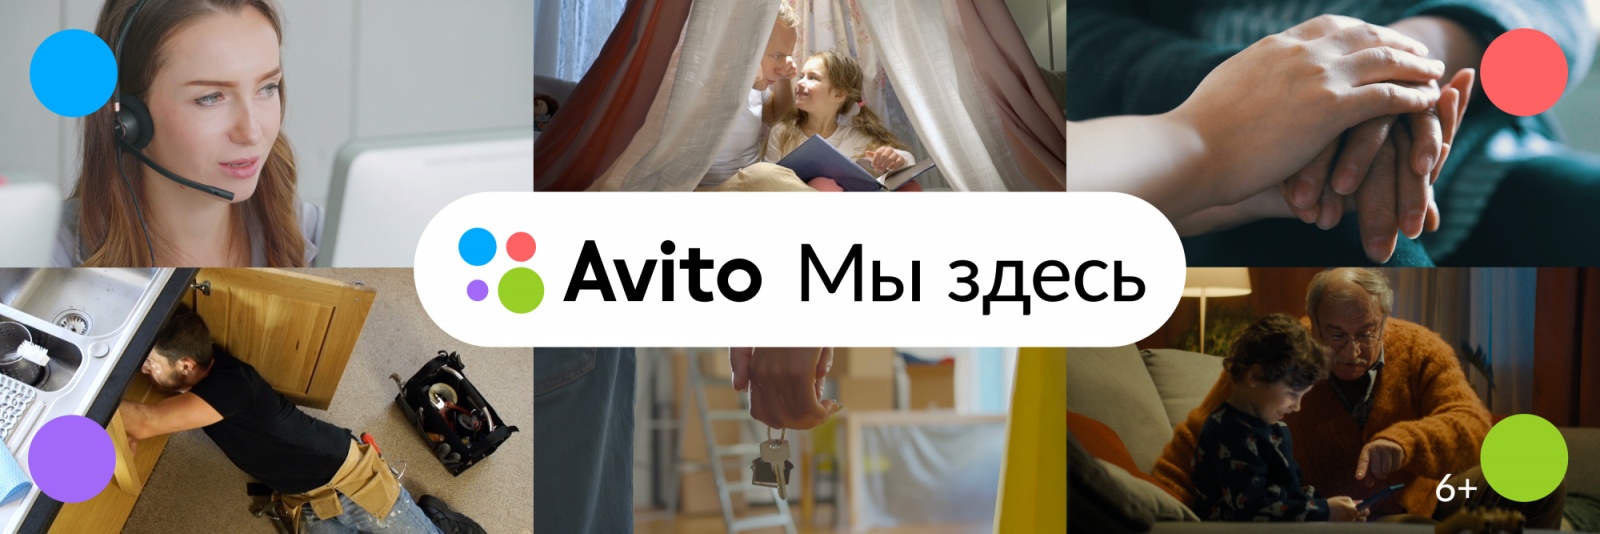 Реклама Avito мы здесь